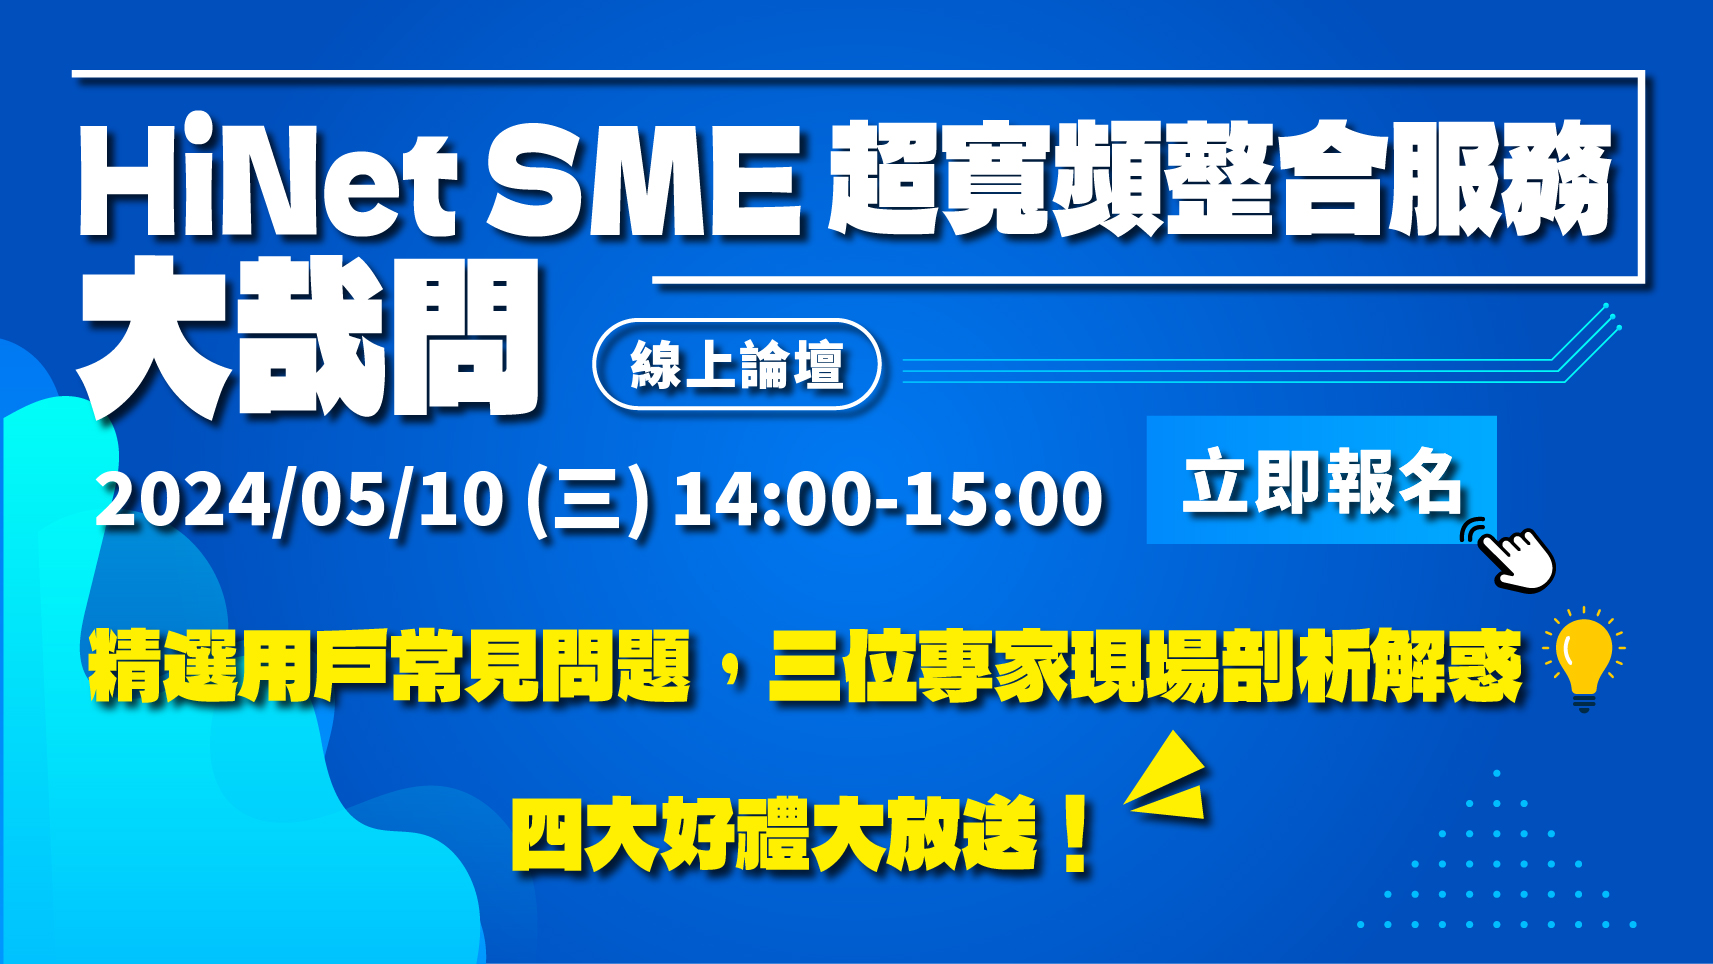 2024/05/10 (五) ❰ HiNet SME 超寬頻整合服務大哉問 ❱ 線上論壇活動